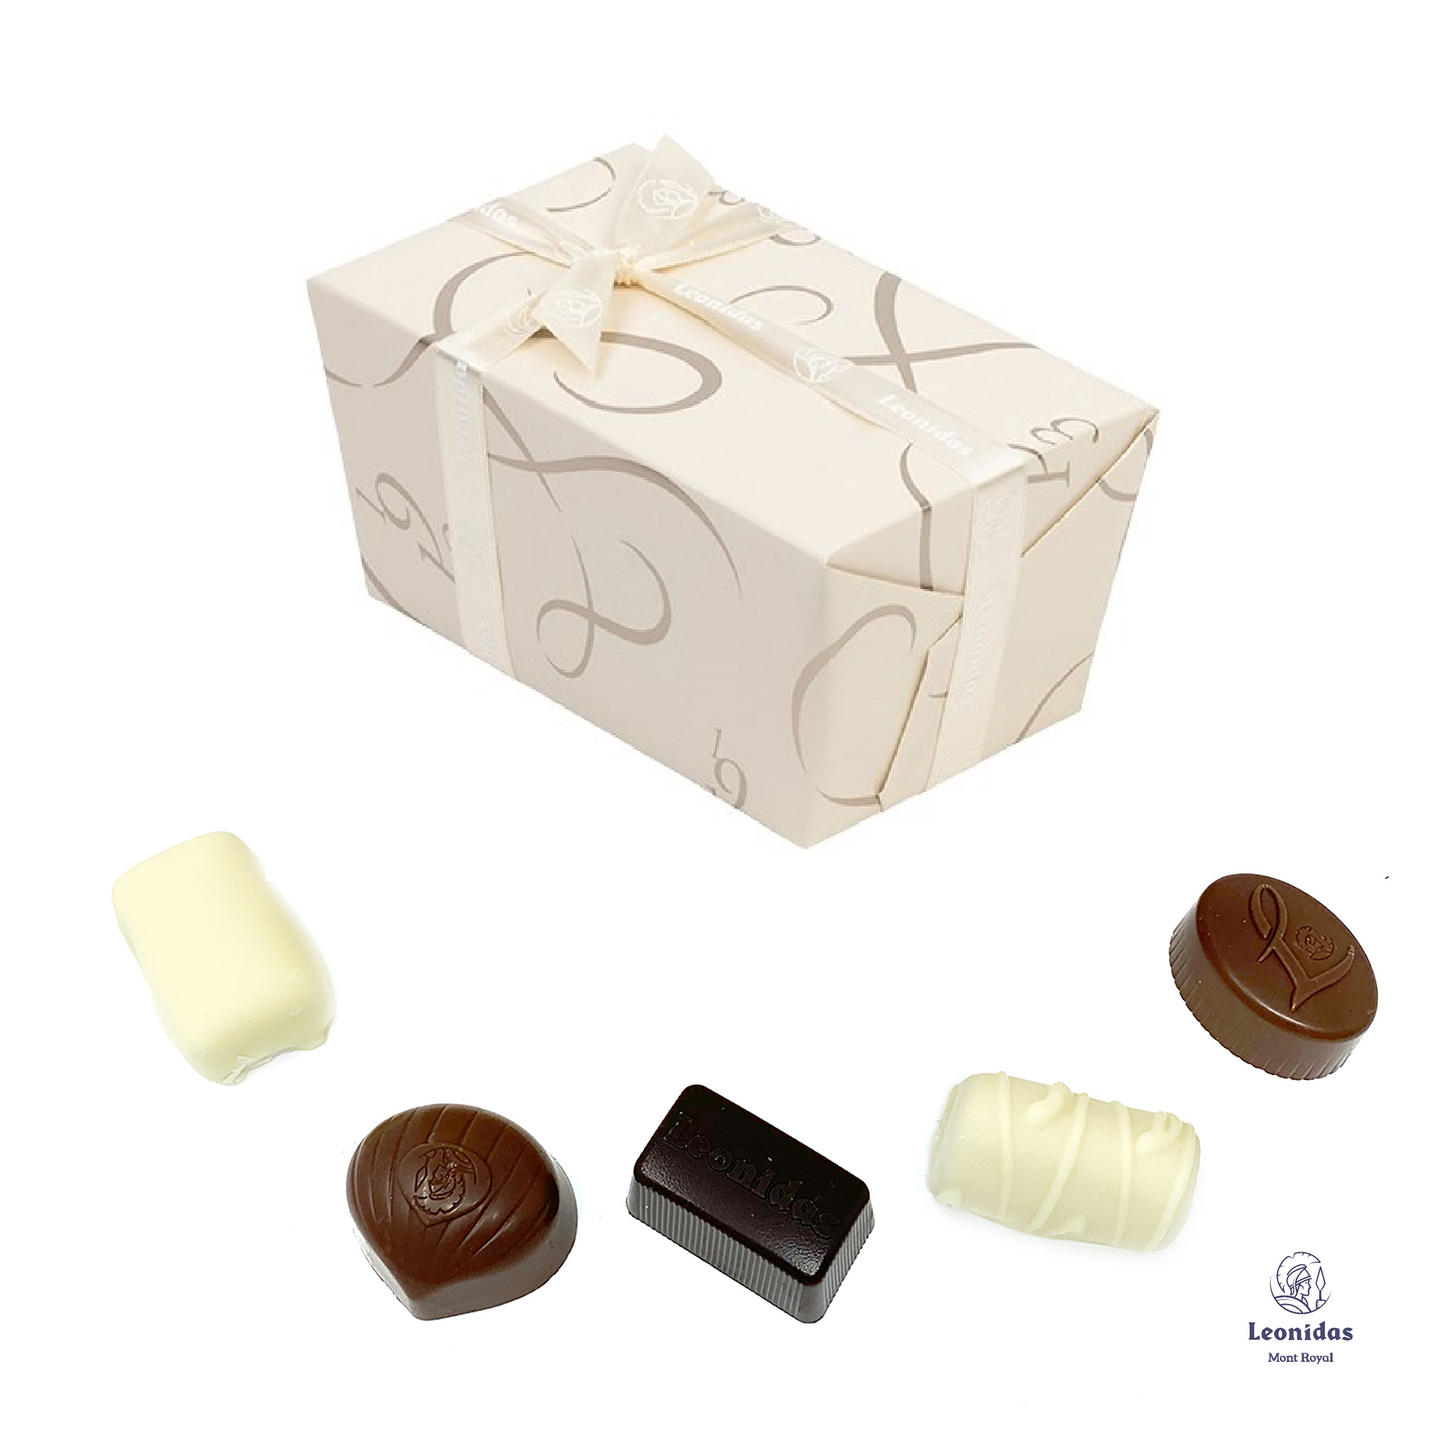 Leonidas - Ballotin - Assortiment de chocolats belges, sans alcool, durables et équitables